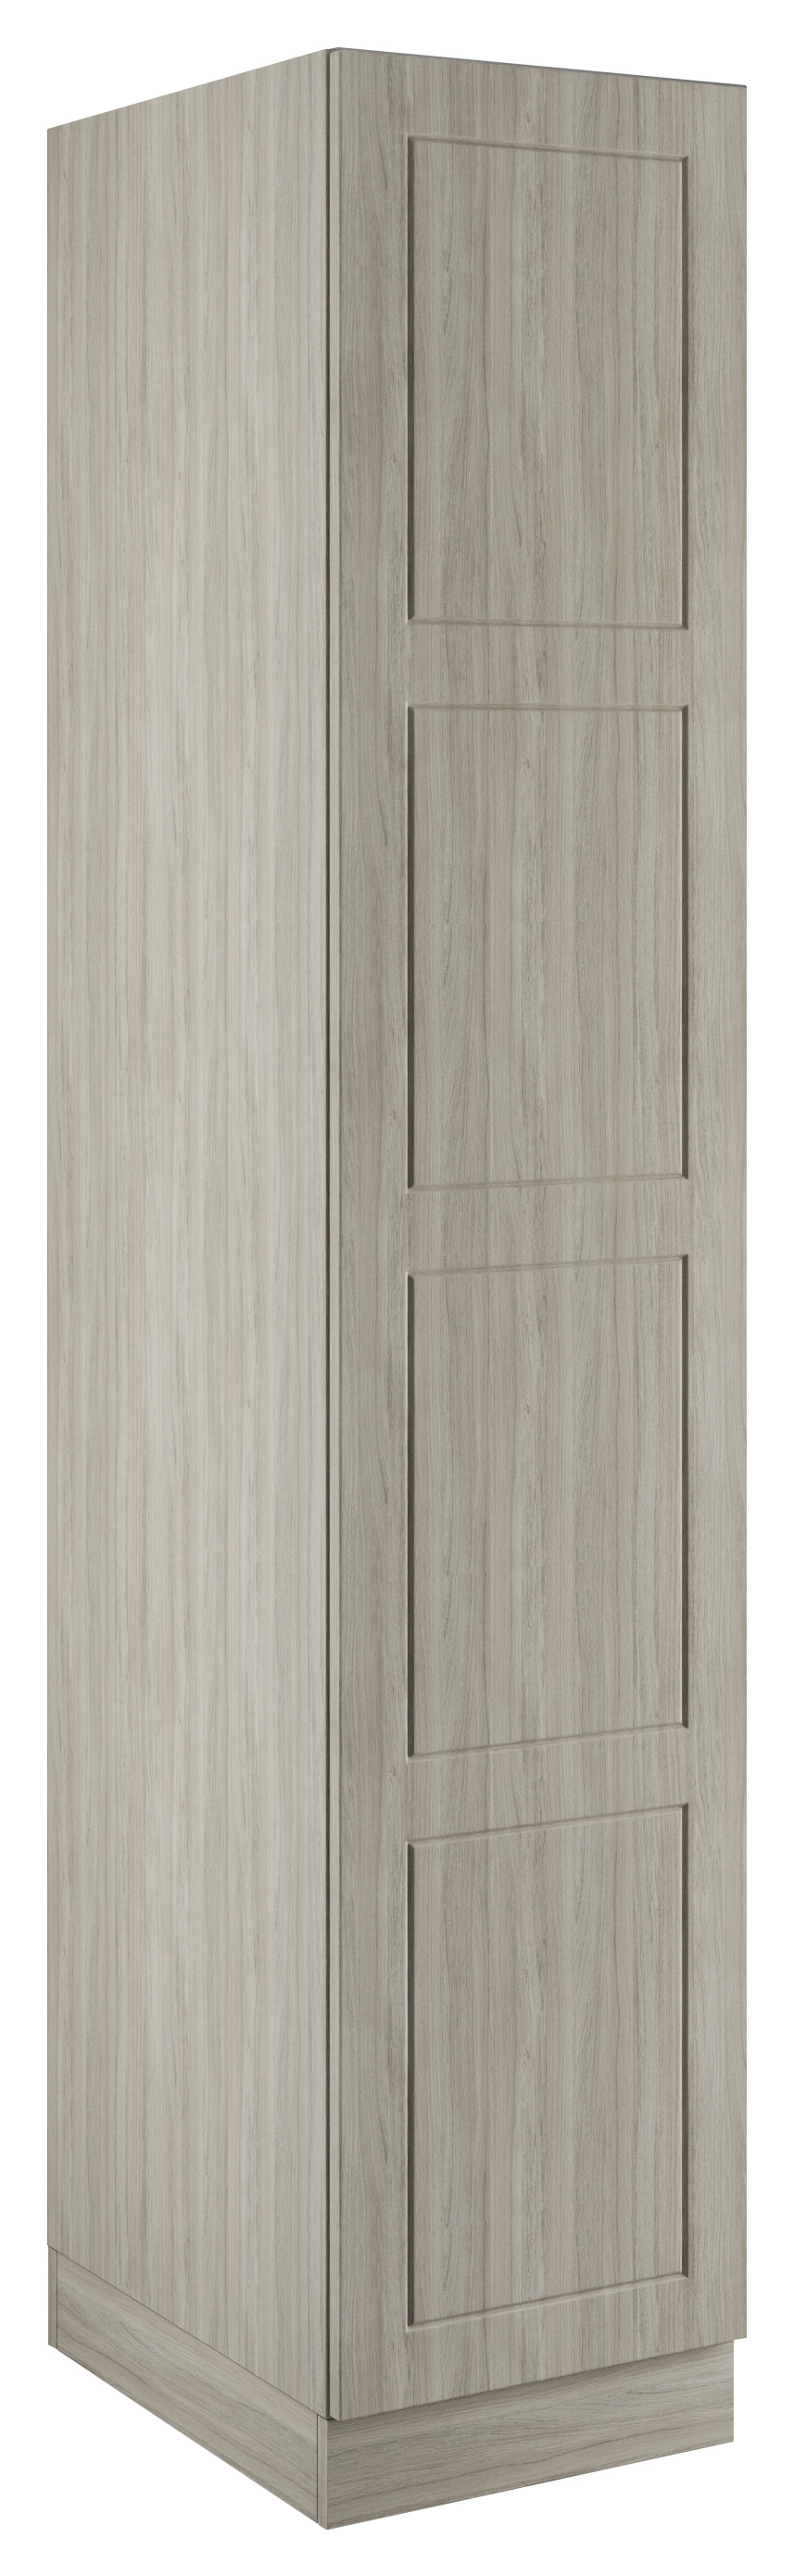 Bramham Urban Oak Single Wardrobe with Double Rail - 450 x 2260 x 608mm